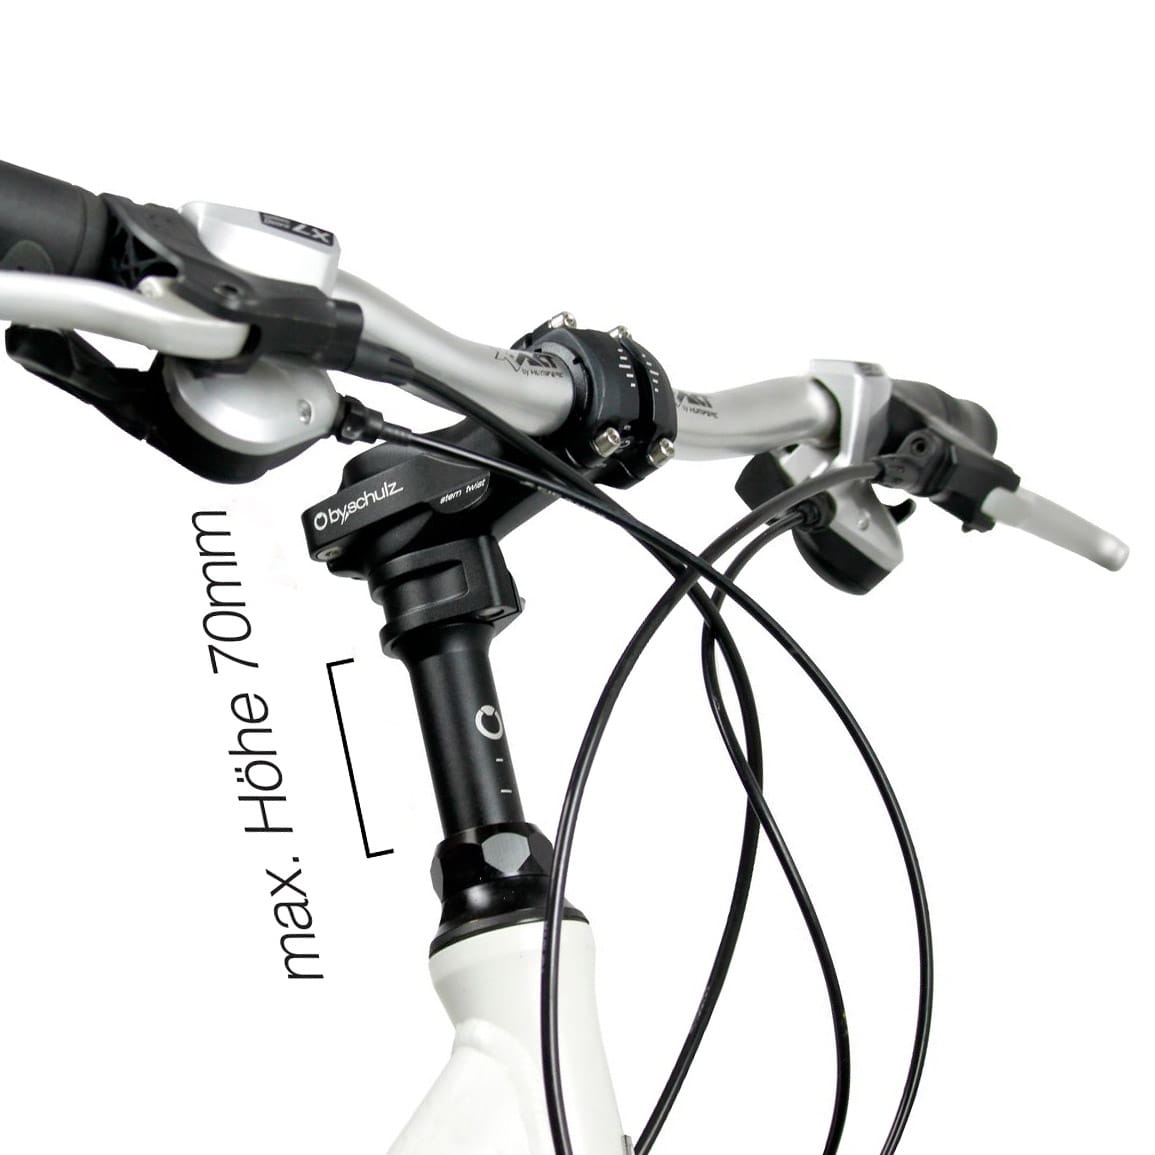 Aramox Motorrad verstellbare Gabel Abdichtung Treiber Werkzeug, Universal  1,5-2 Zoll verstellbare Gabelöldichtungen Treiber Installation Dirt Bike